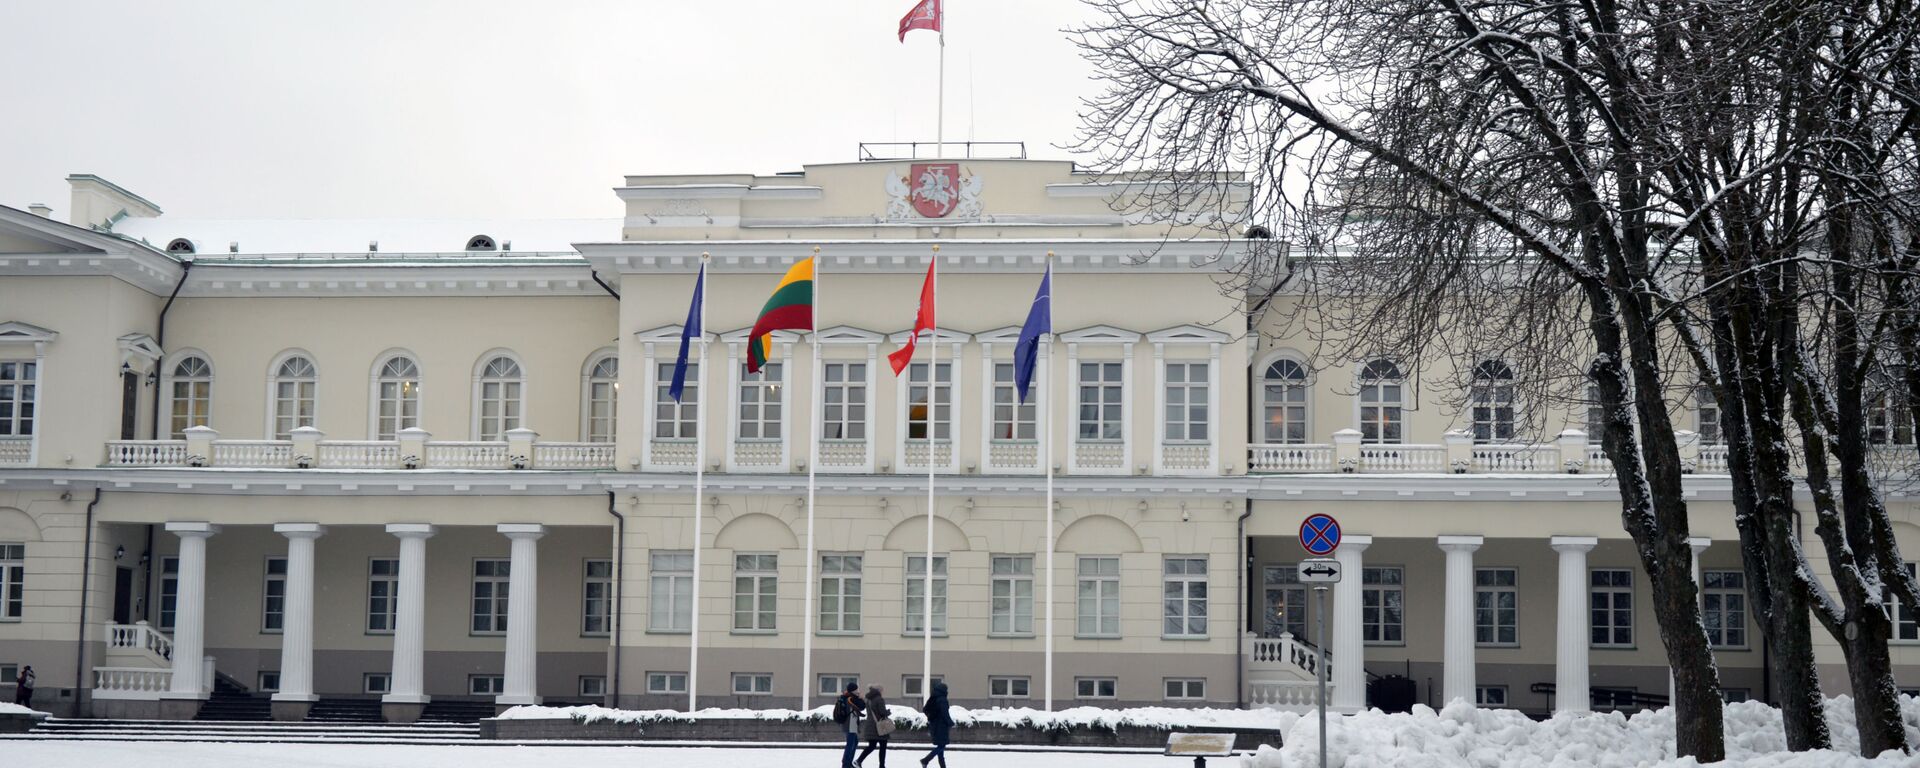 Президентский дворец и площадь имени Симонаса Даукантаса, архивное фото - Sputnik Lietuva, 1920, 18.02.2021